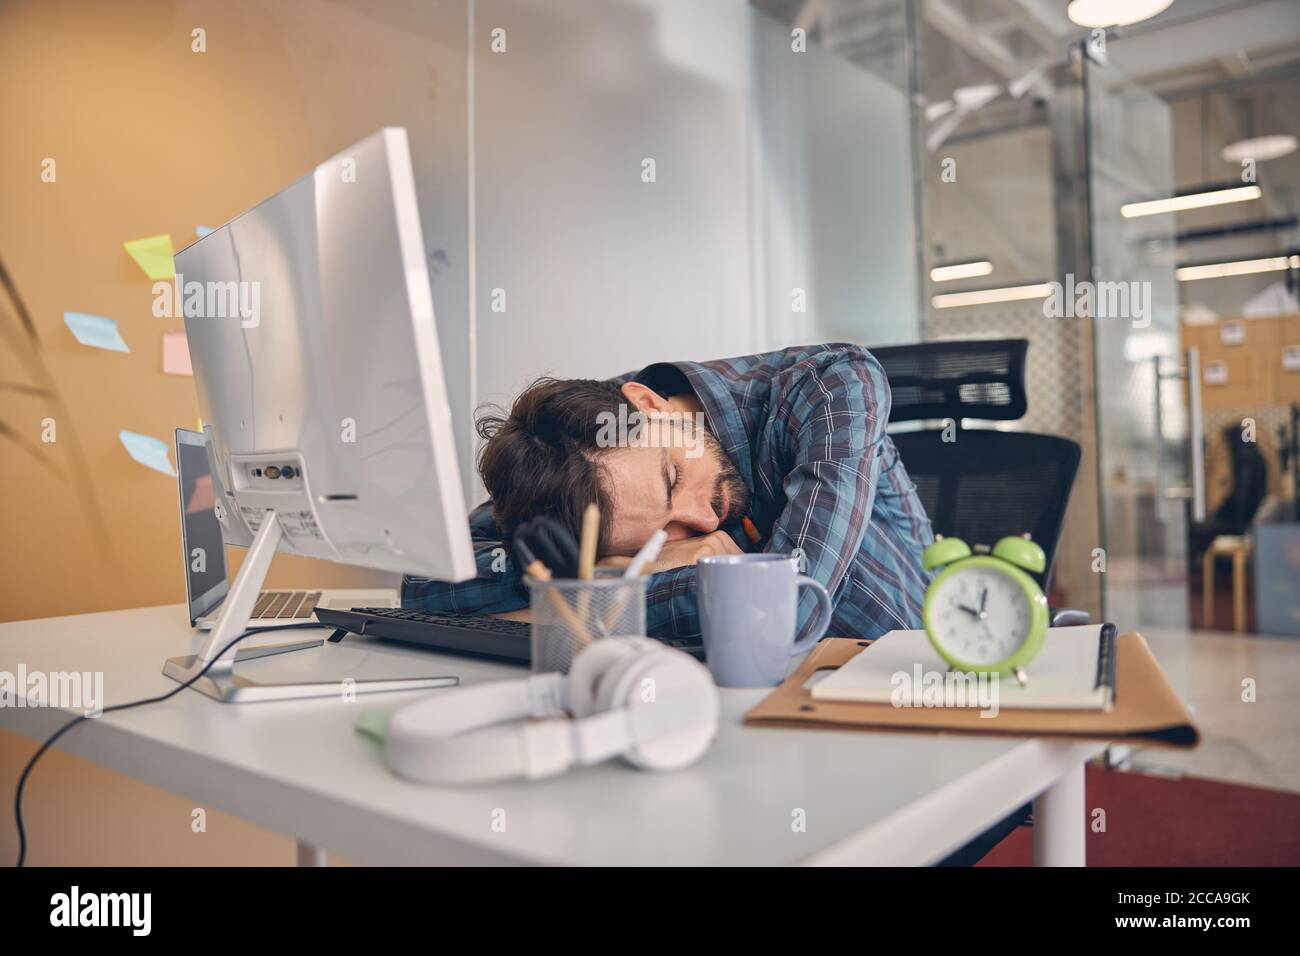 Exhausta, hombre joven con exceso de trabajo tomando una siesta en el cargo Foto de stock